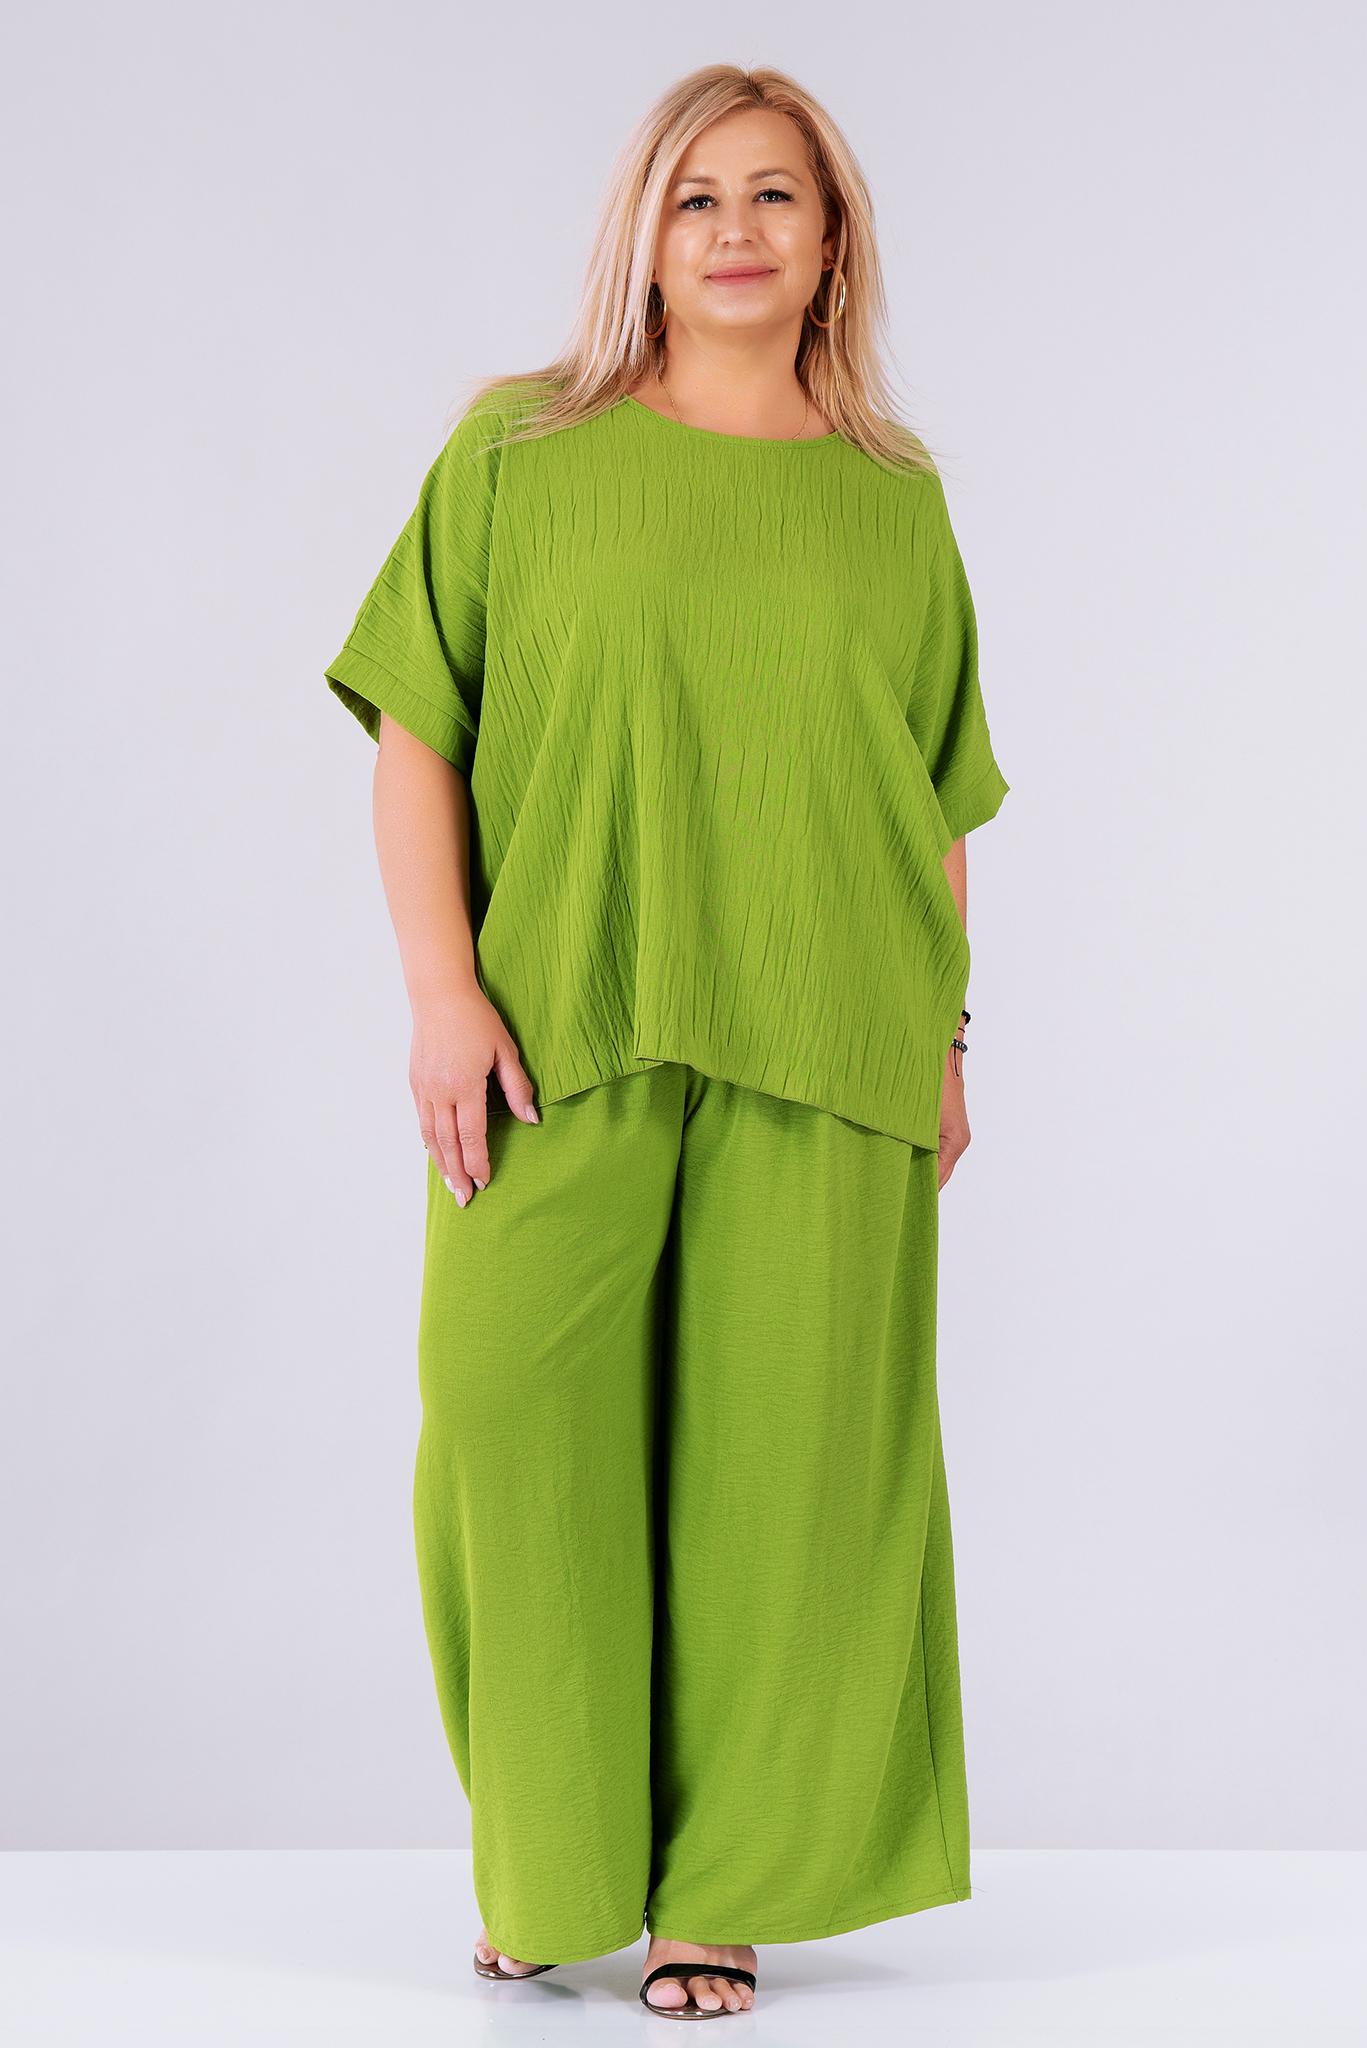 МАКСИ комплект с панталон и блуза в зелено от релефна материя